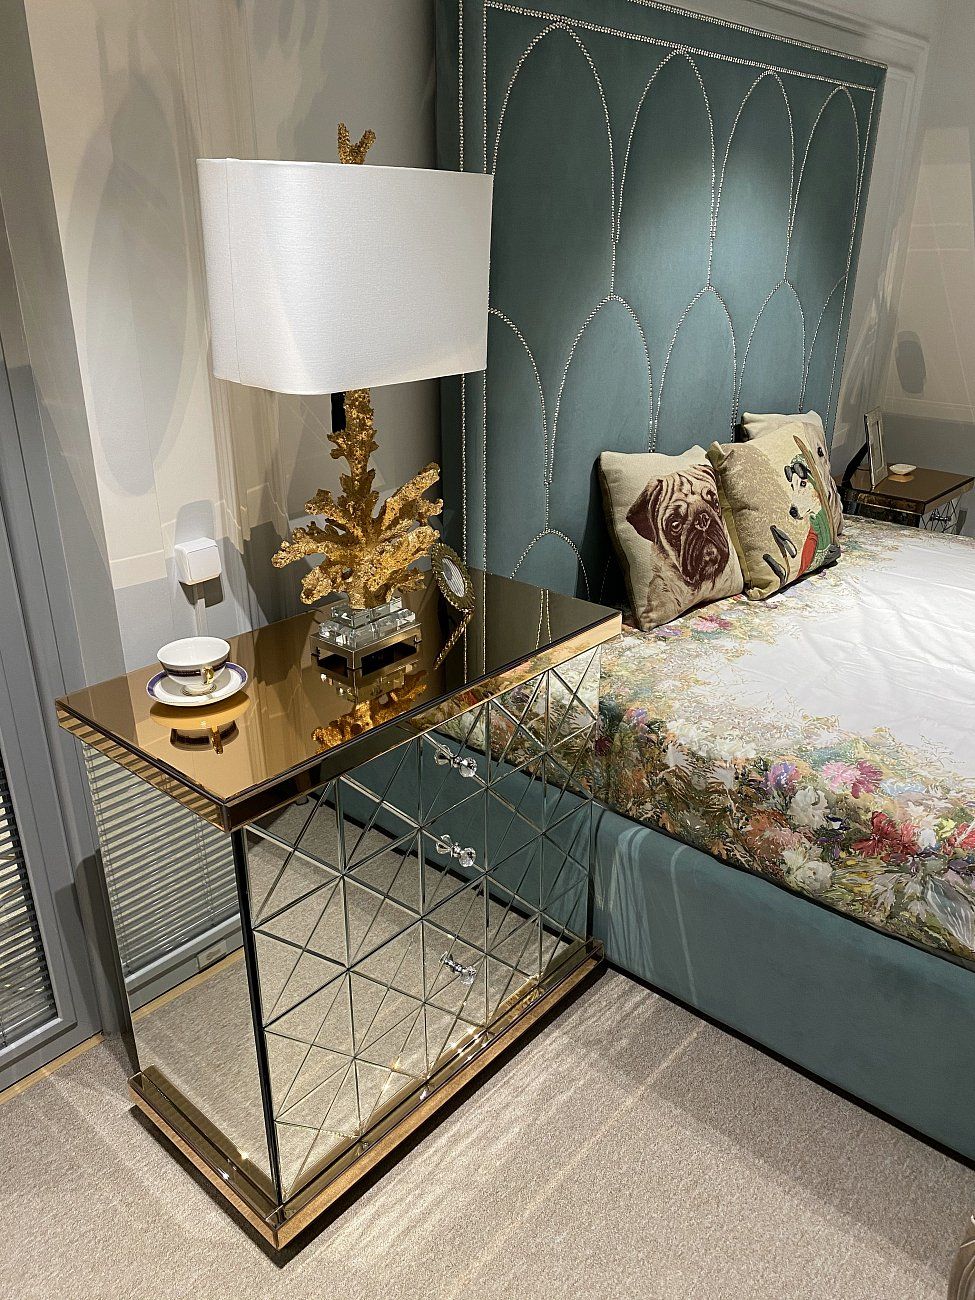 Double bed 160x200 cm aquamarine Petals Queen